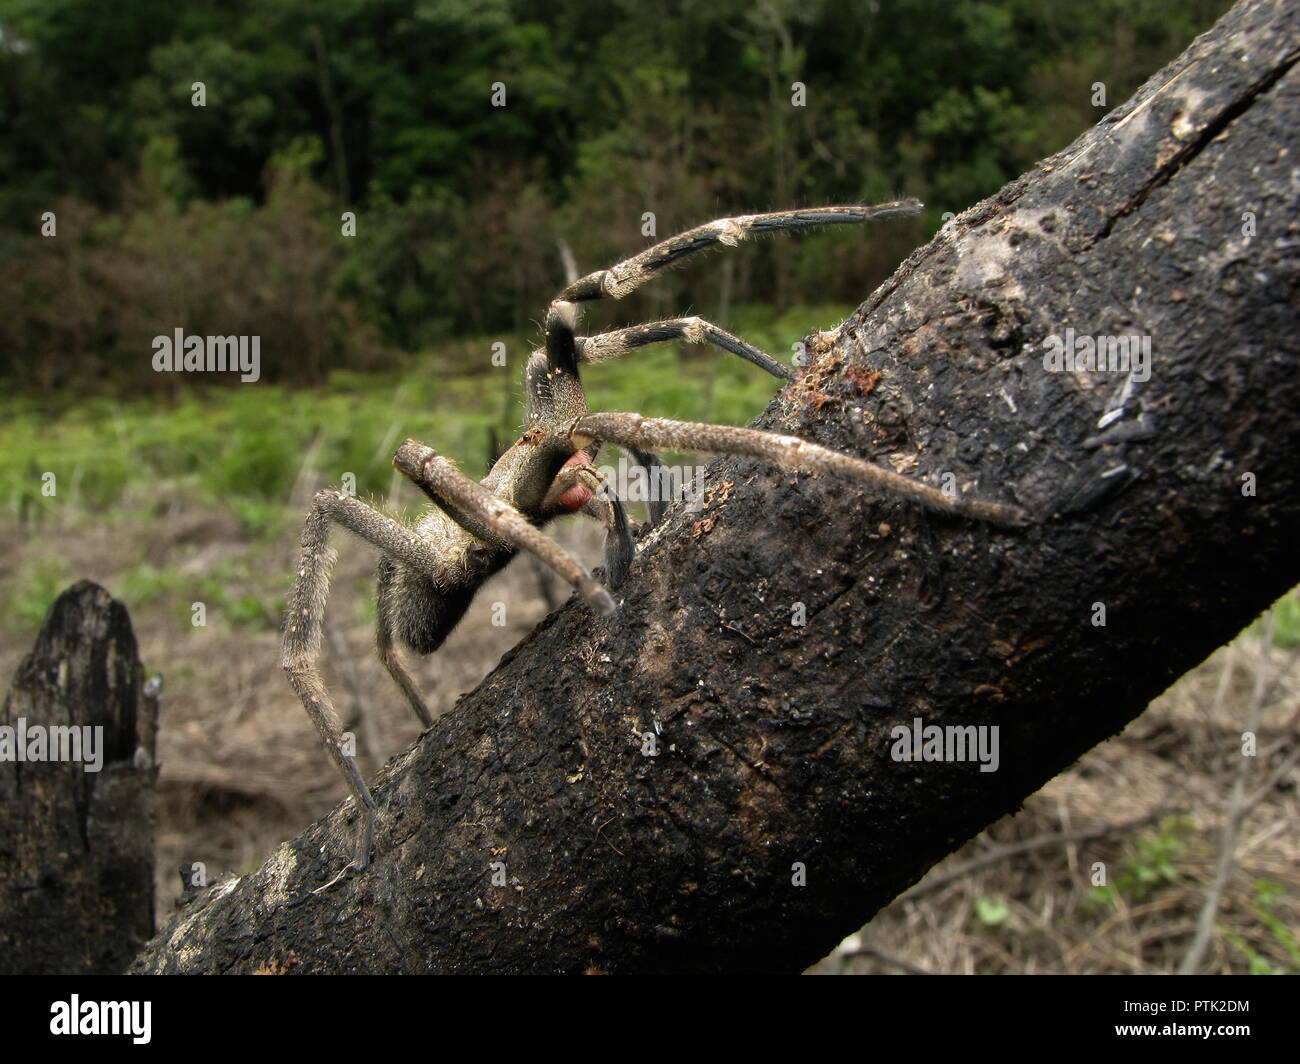 L'errance brésilien armadeira (araignée) marche sur le bois, d'araignées venimeux d'Amérique du sud, également connu sous le nom de Phoneutria, avec quelques morsures mortelles. Banque D'Images